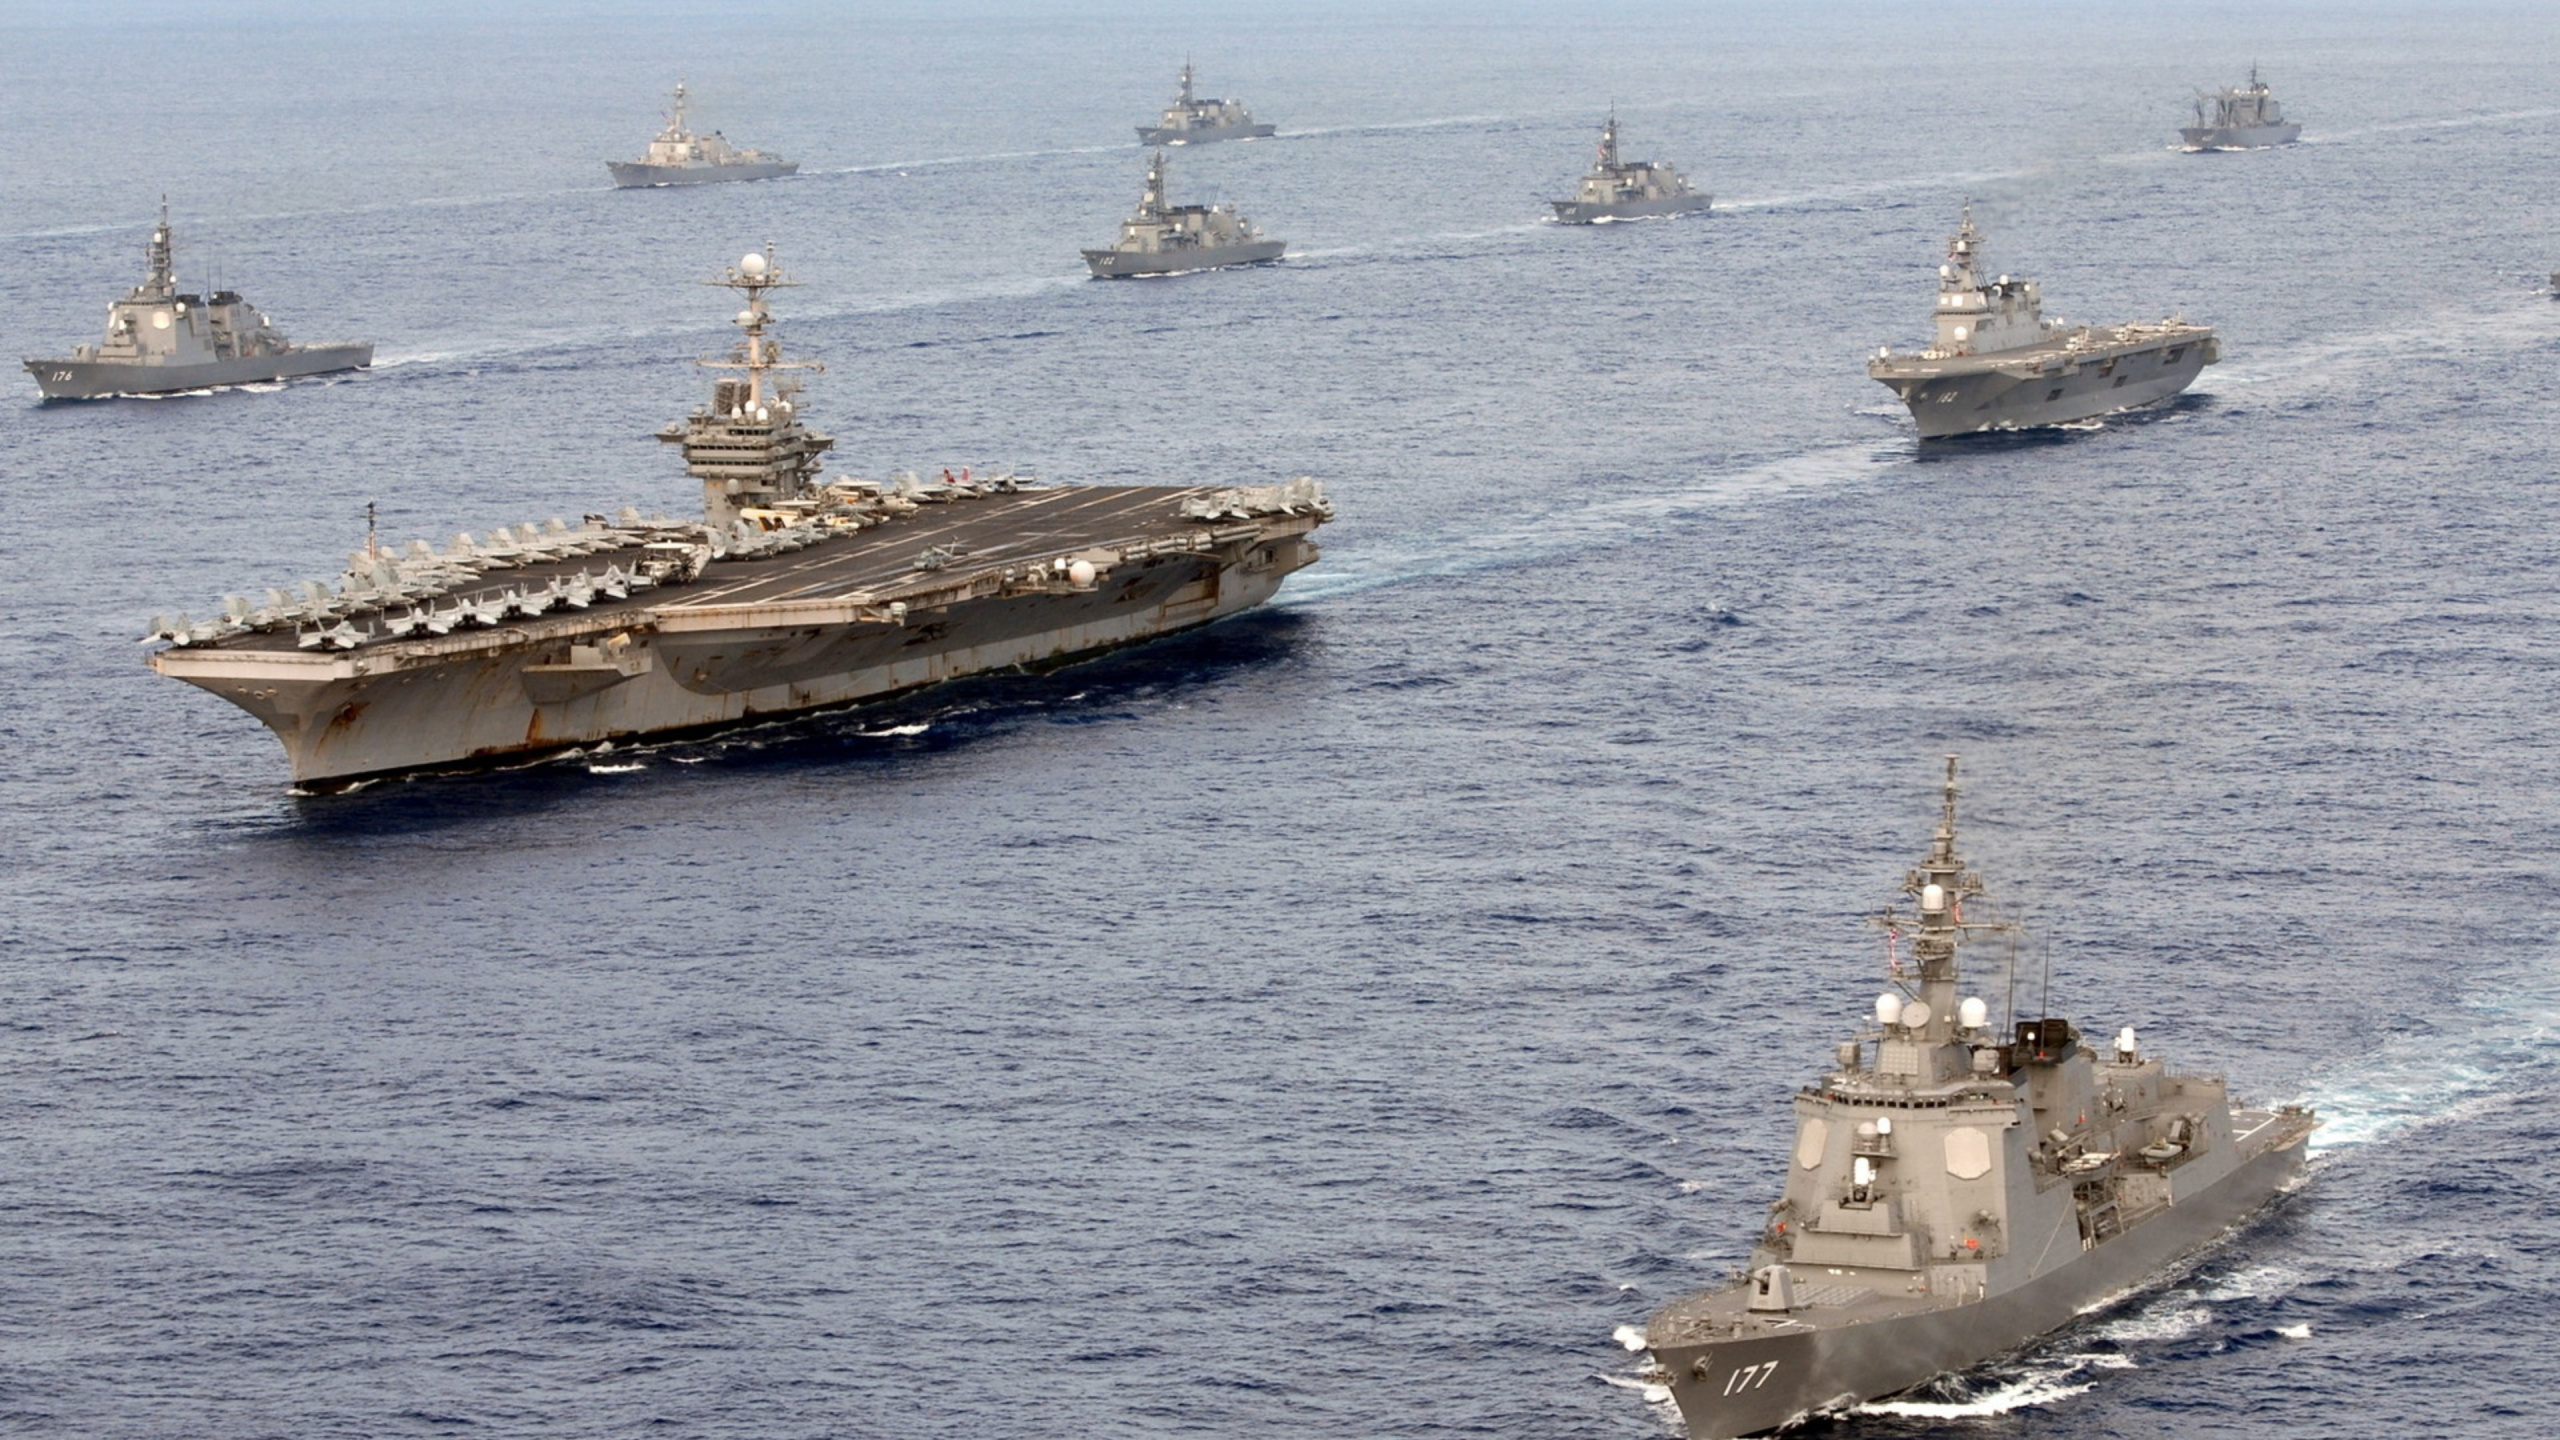 海军舰队, 海军, 美国海军, 航空母舰, 军舰 壁纸 2560x1440 允许